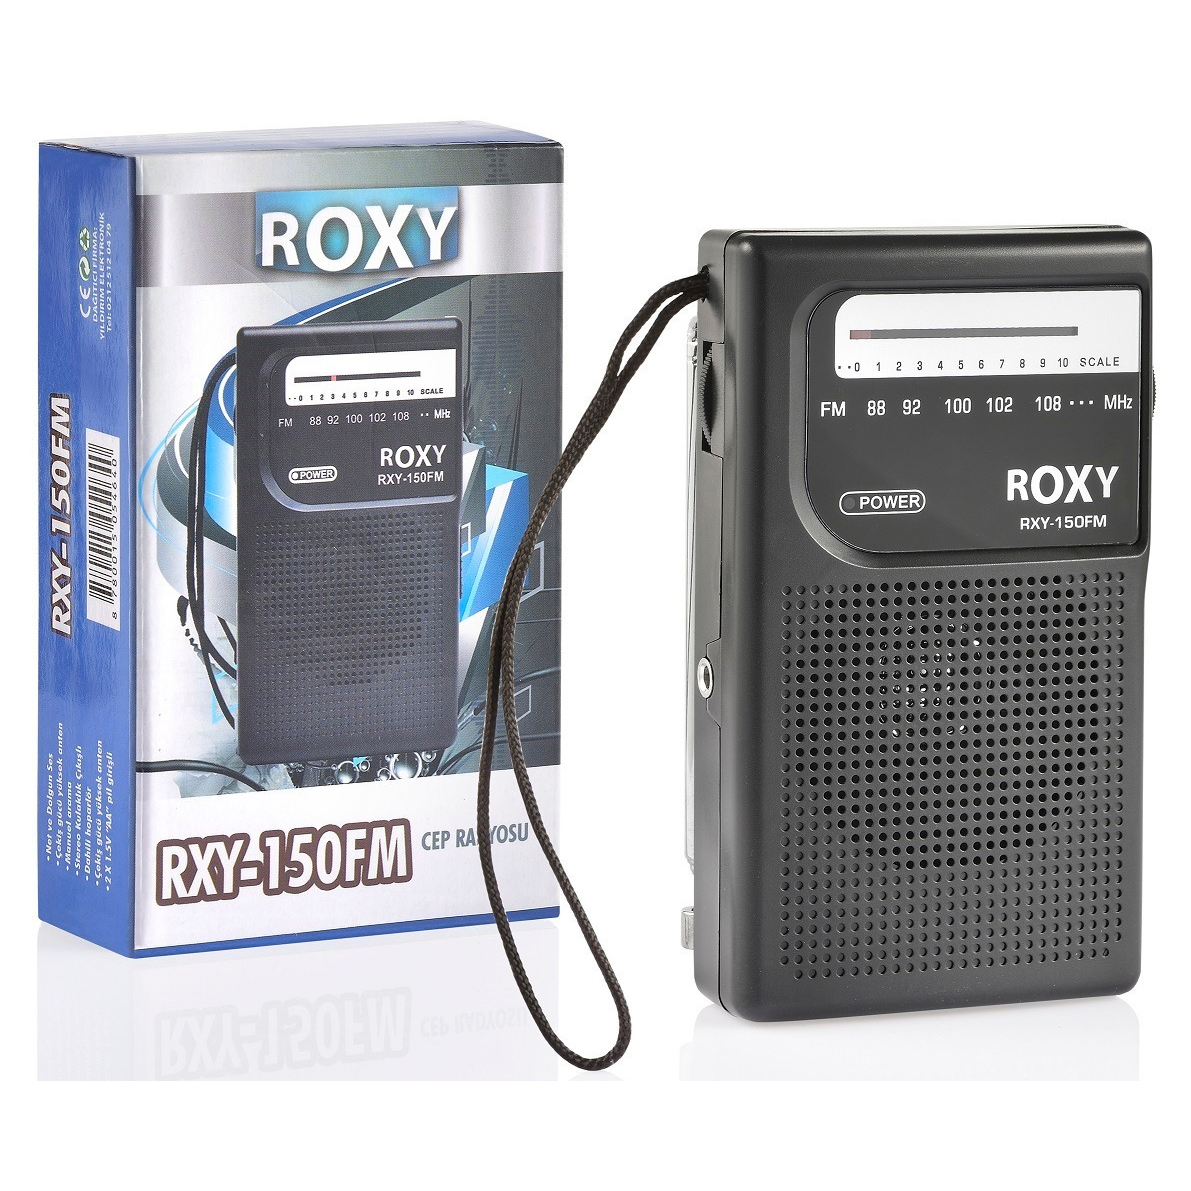 Roxy%20RXY-150%20FM%20Cep%20Radyosu%20(Deprem%20Radyosu)